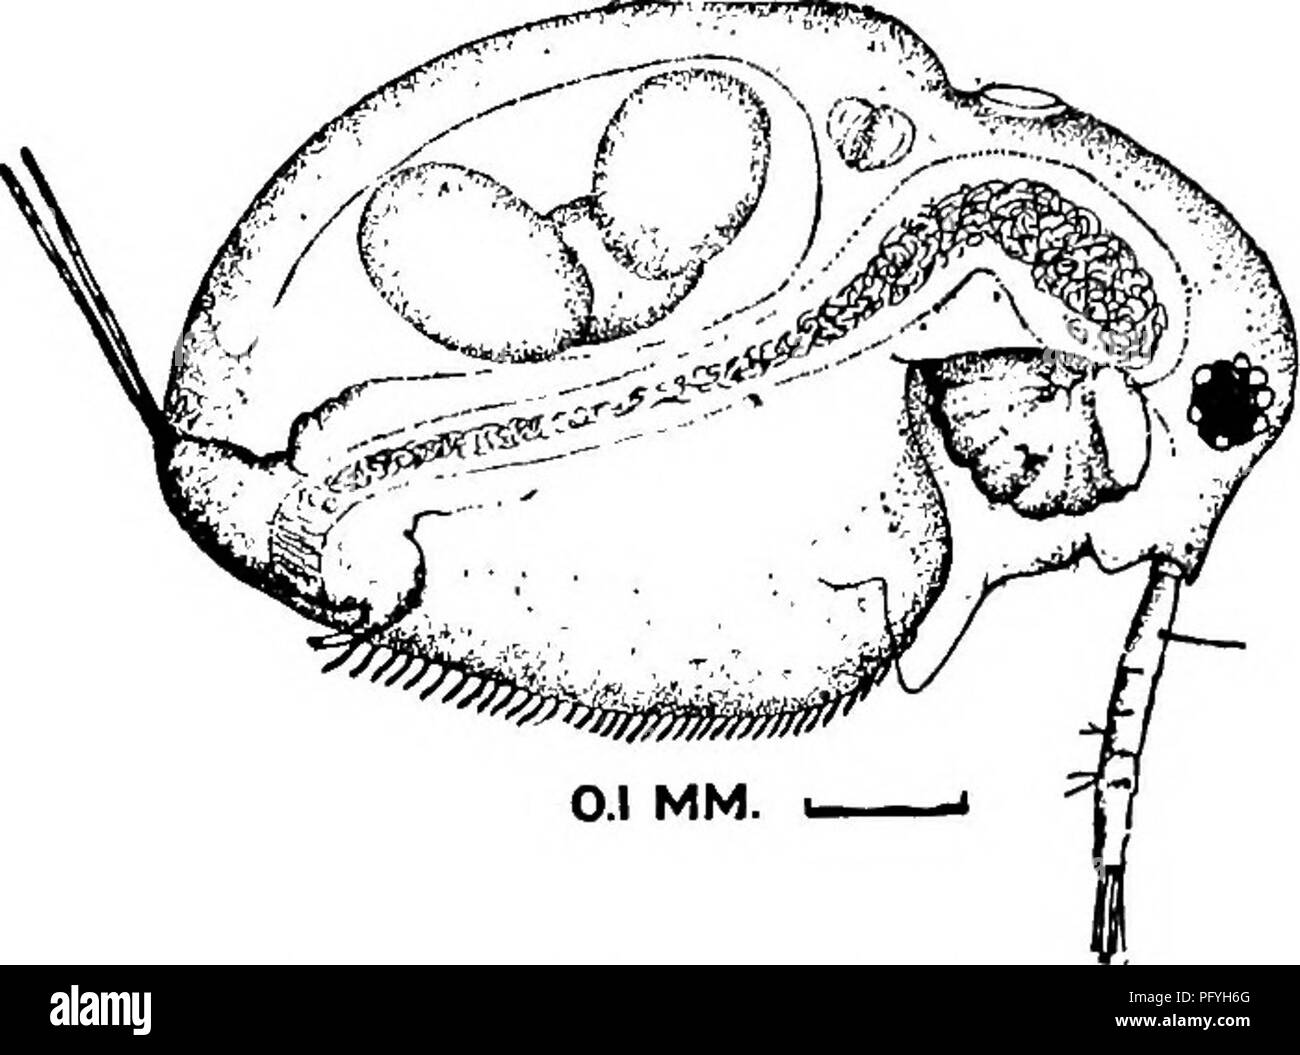 . La biologie d'eau douce. Biologie des eaux douces. 7J6-BIOLOGIE D'EAU DOUCE ii6 (loo, 107) Antennary setae 0-1-1-3. 1-1-3 ; tous semblables et. plumeuses Lathonura Lilljeborg 1853. Seule espèce Lathonura rectirostris (O. F. Muller) 1785. Forme générale ovale-, pas com- pressé. Des vannes ; la marge ventrale avec de courtes, dose-set, lisse, en forme de lancette, spatulés ou épines. Antennules tout droit, avec sensation-sèche près de la base ; 2 paires de soies de sens dans la moitié distale. L'abdomen très petit, étendu derrière dans un long processus conique, qui porte la très longue soies abdominales ; couvert d'épines fines et régler Banque D'Images